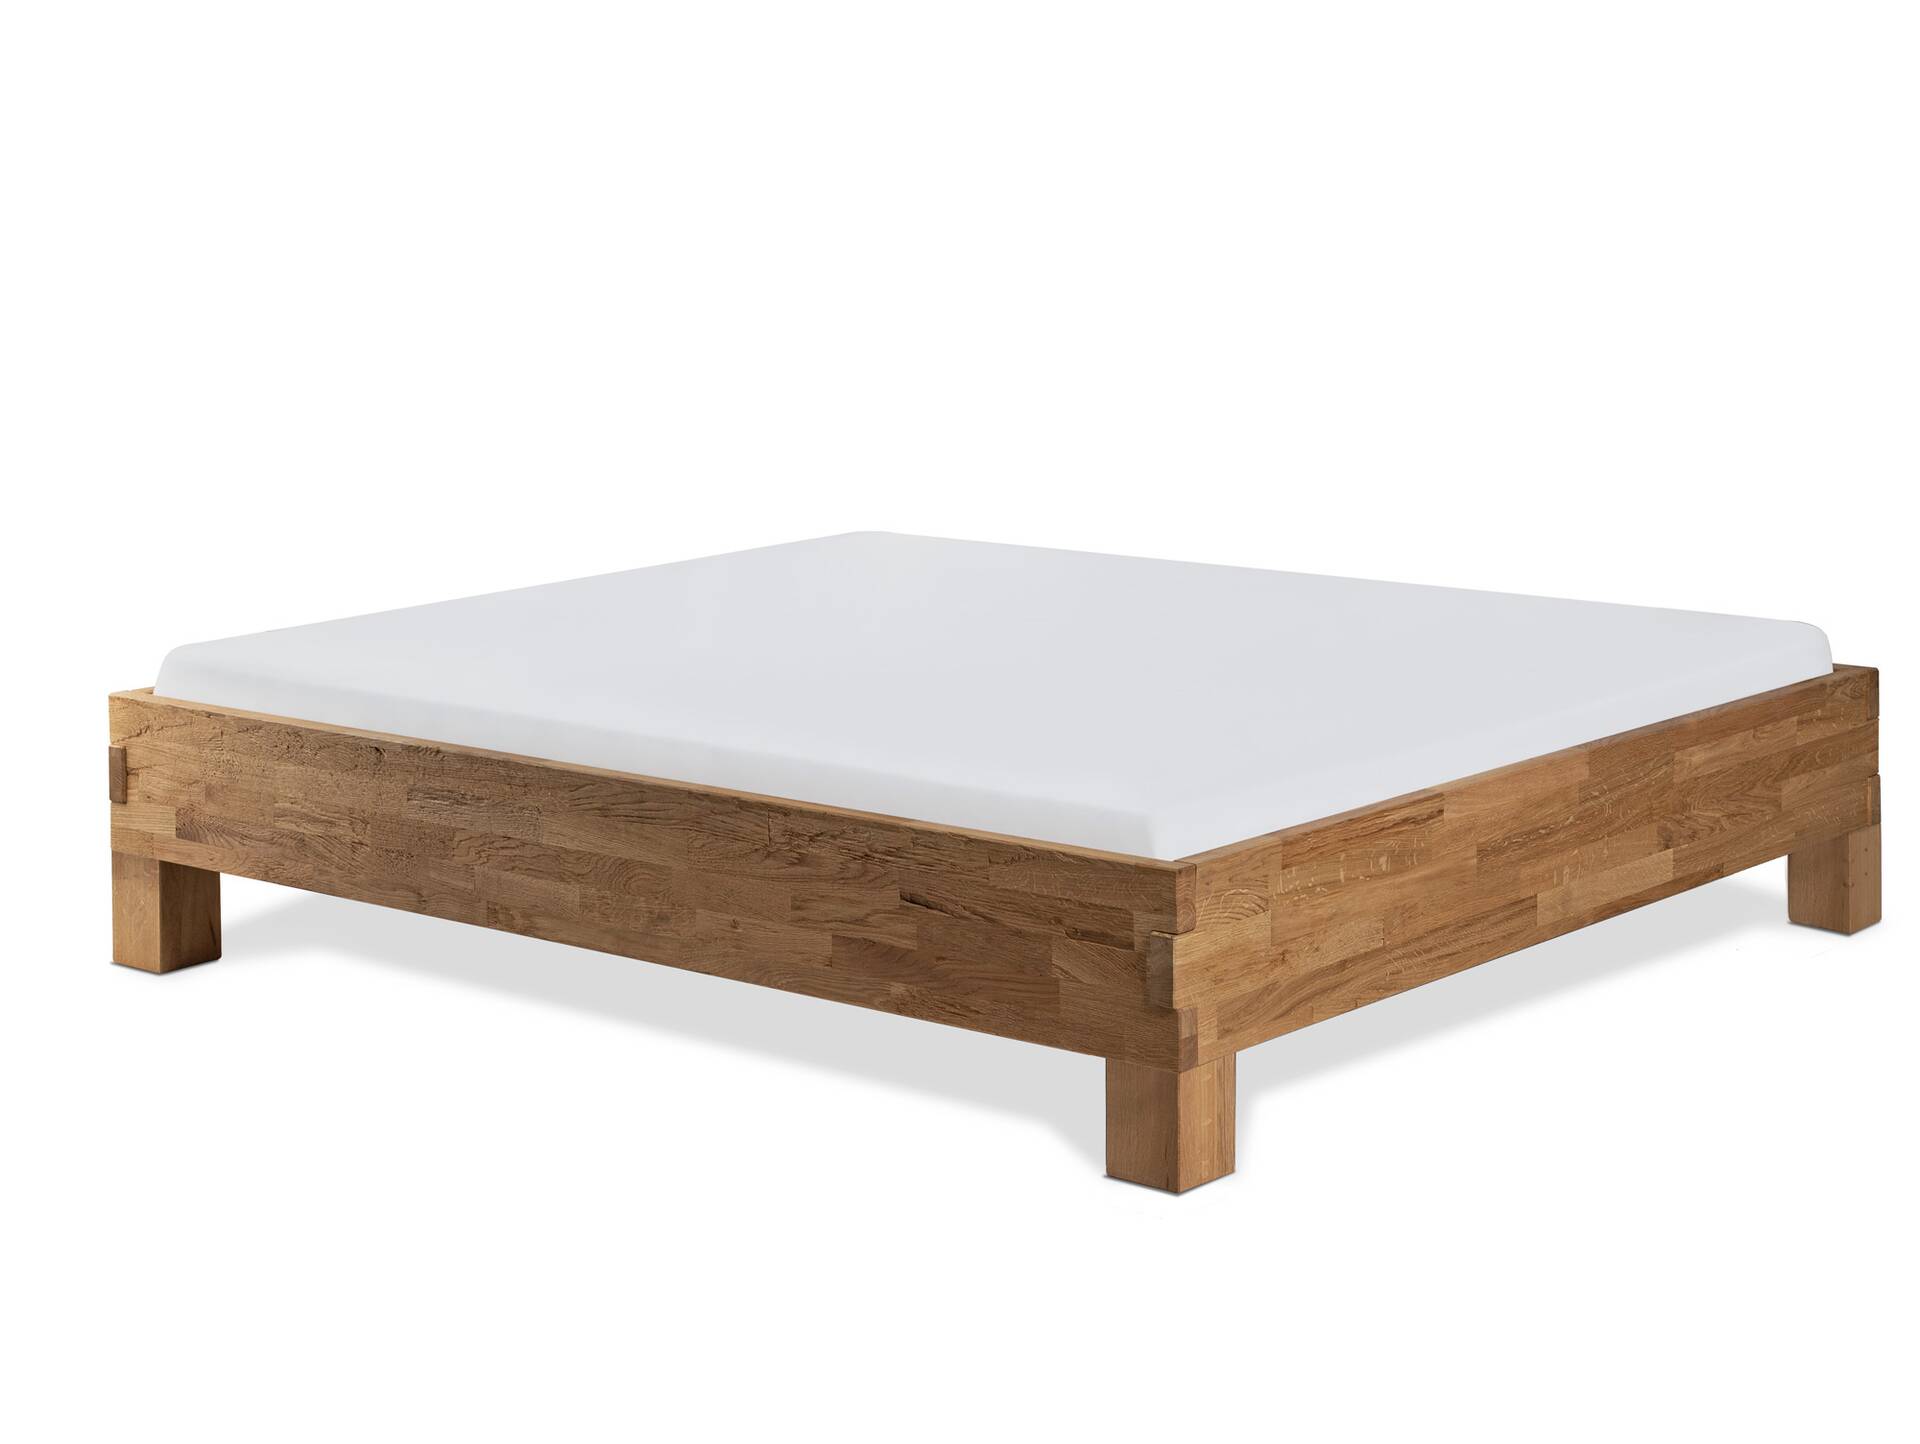 CORDINO 4-Fuß-Bett aus Eiche ohne Kopfteil, Material Massivholz 160 x 220 cm | Eiche lackiert | gehackt